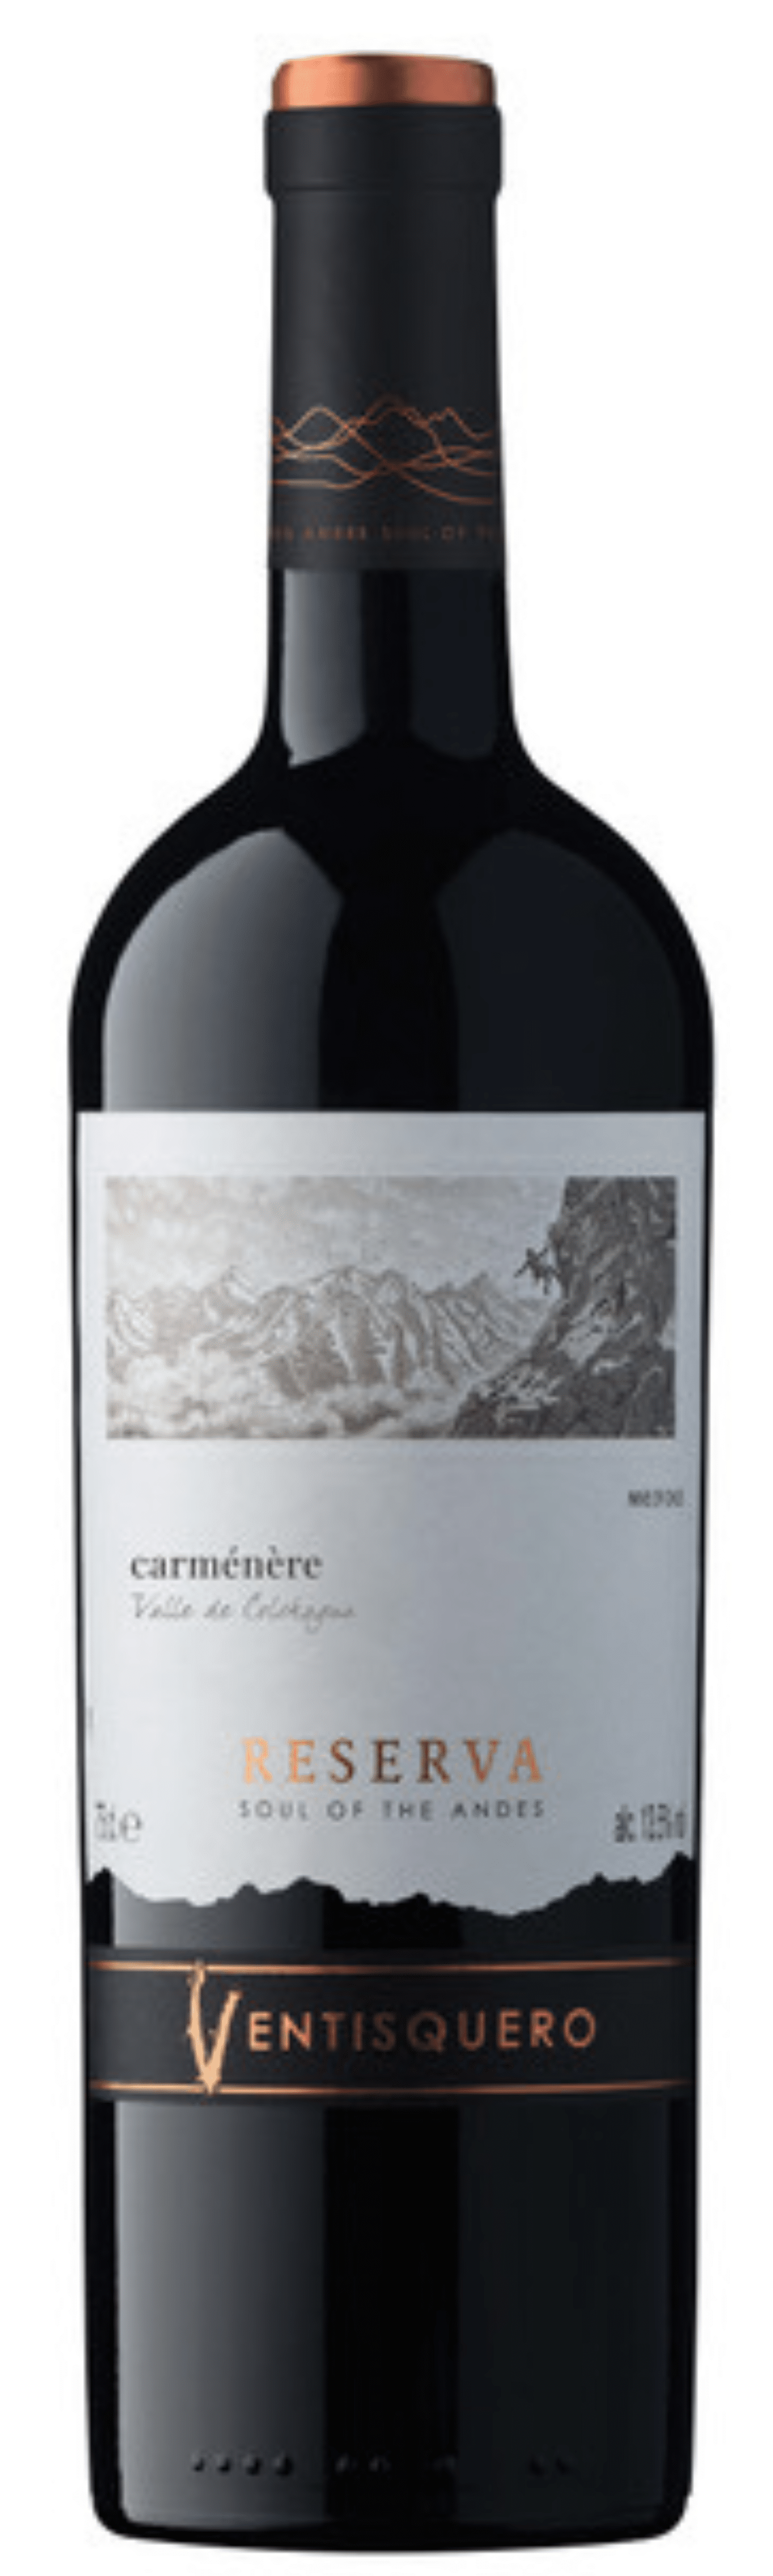 Ventisquero VALLE DE COLCHAGUA Vin 2020 Carmenère CHILI - Trois Fois Reserva